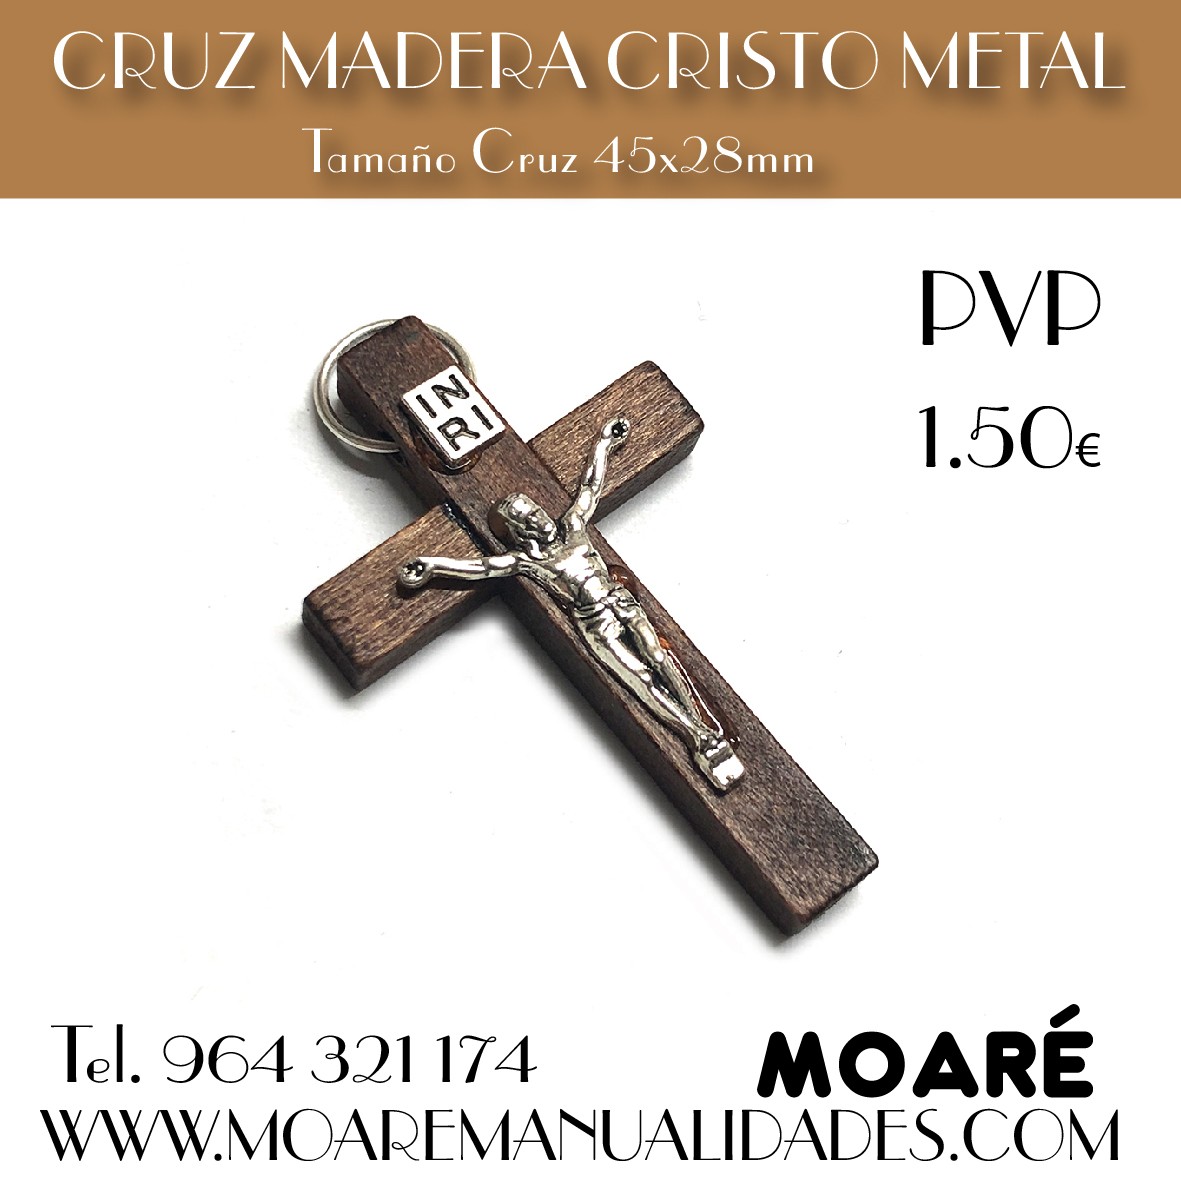 cRUZ DE MADERA CON CRISTO DE METAL Tamaño Cruz 45x28mm